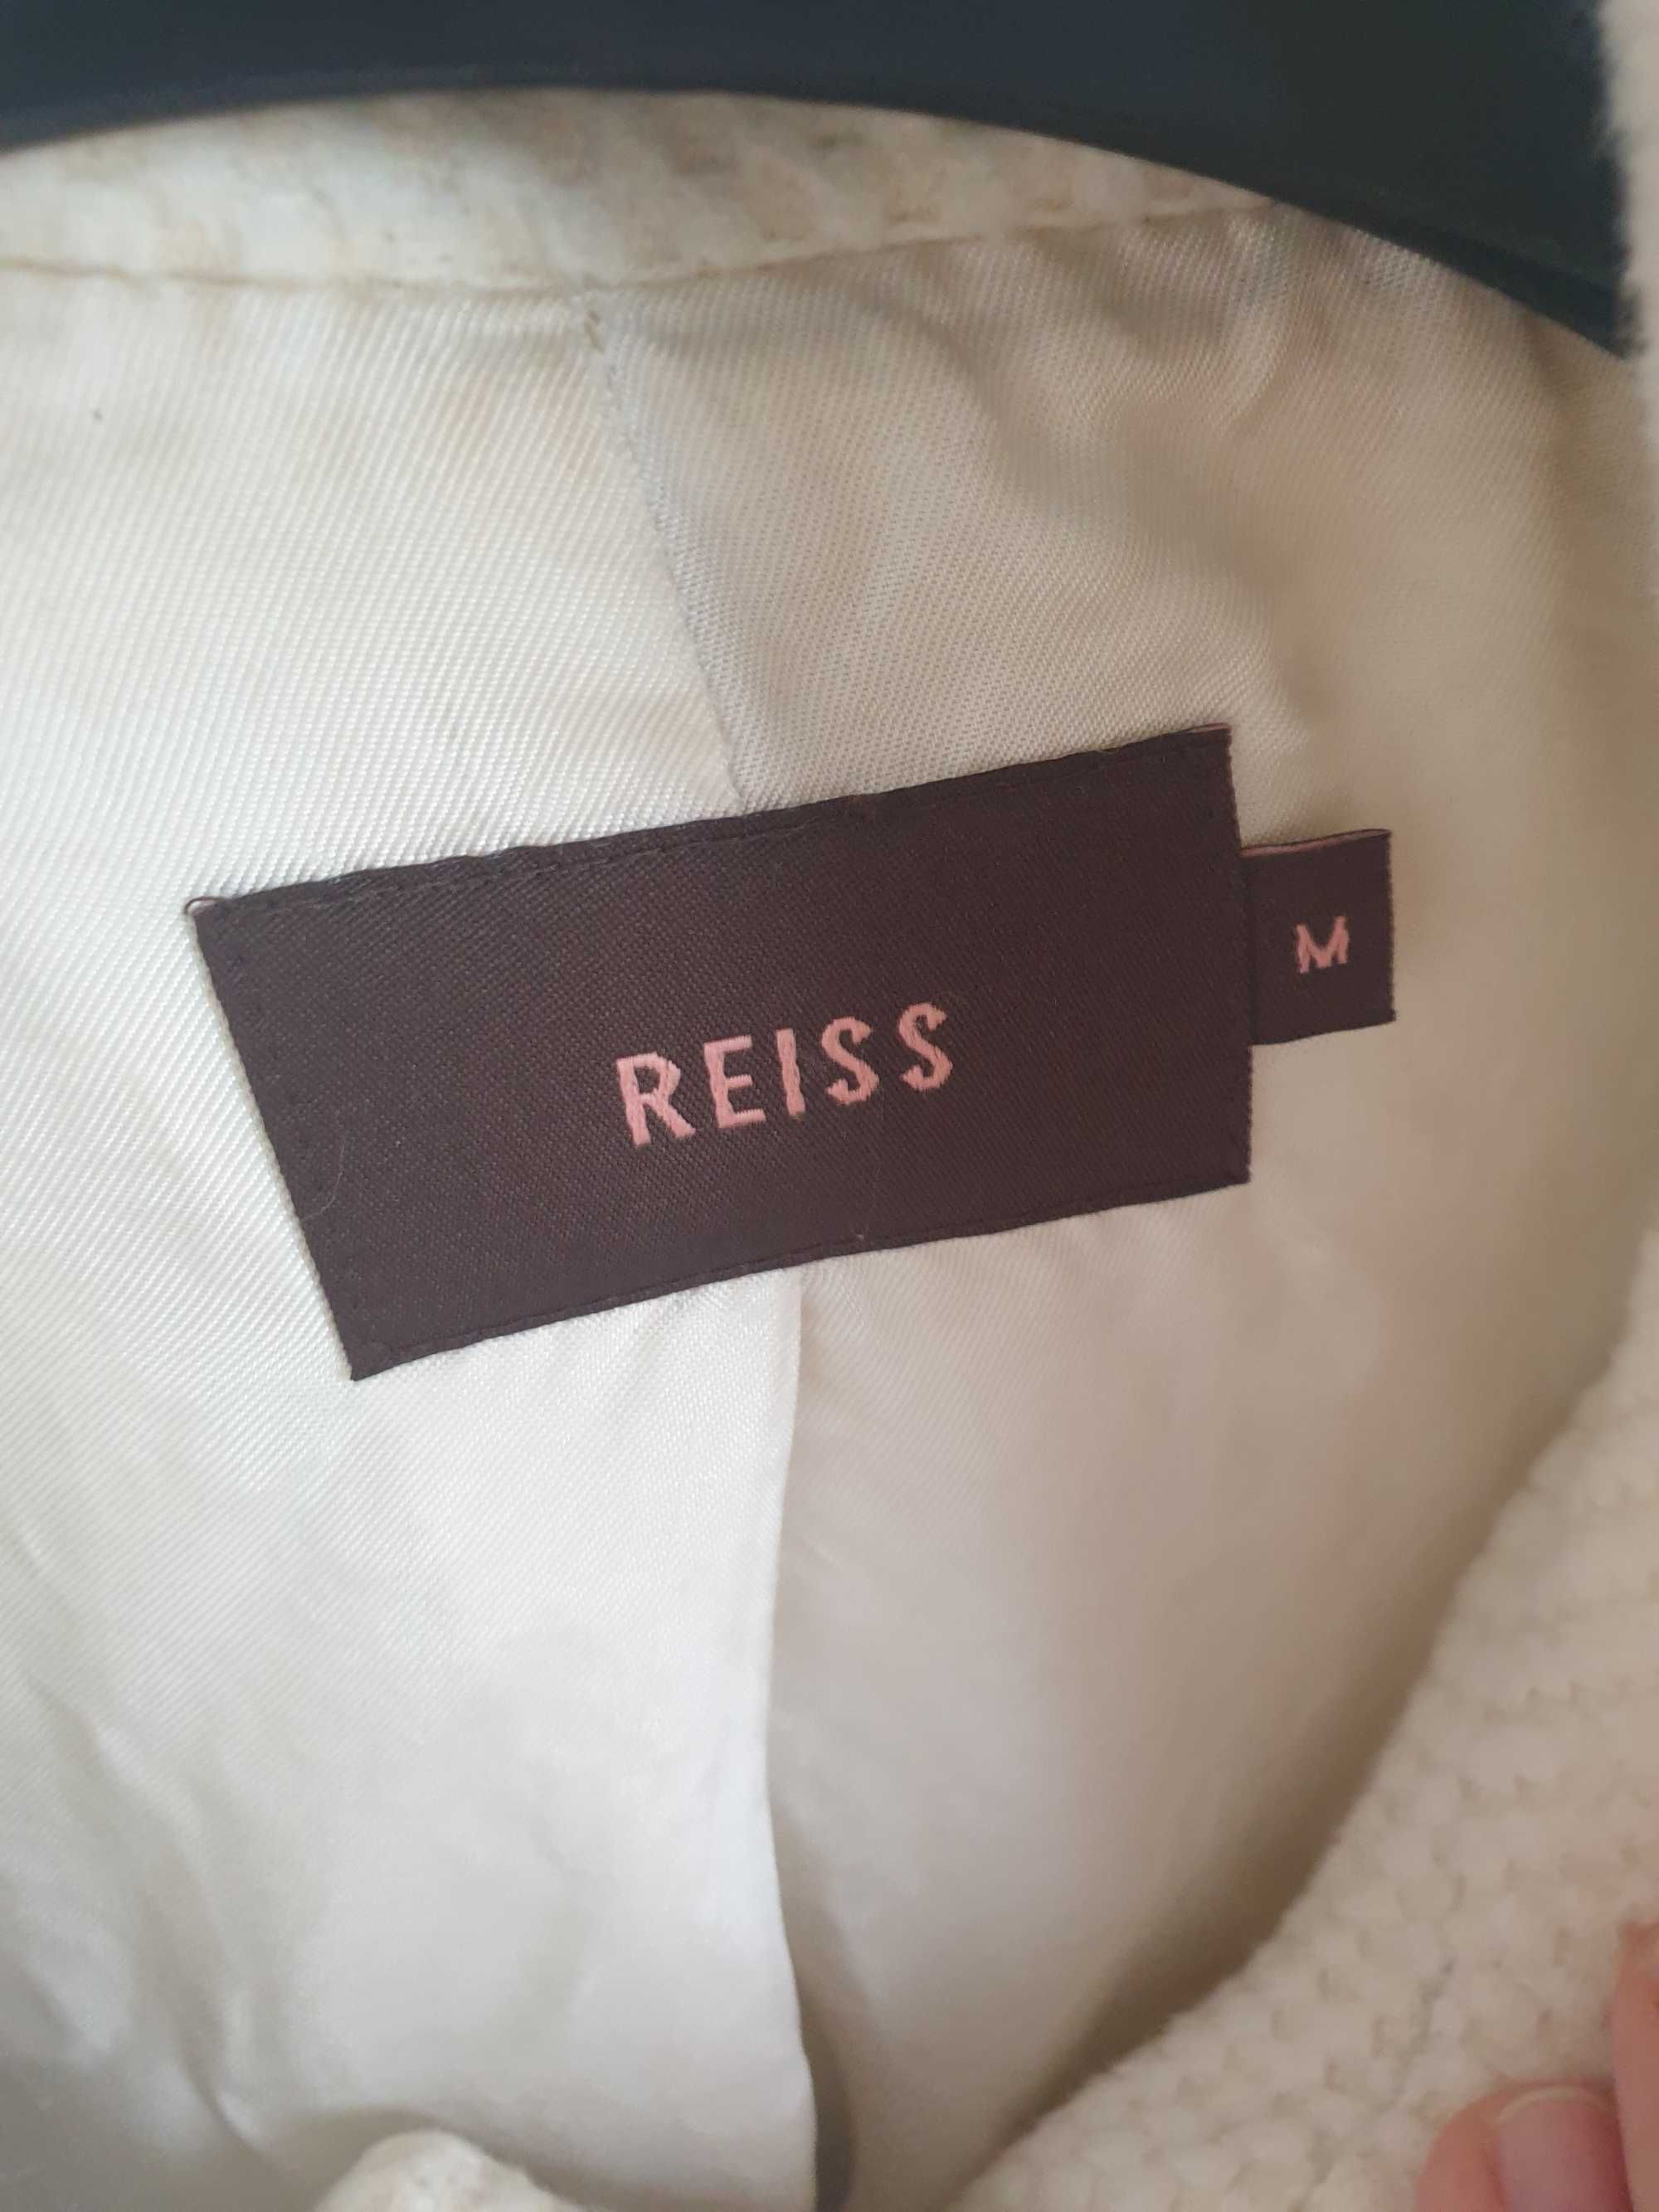 Biały kremowy plaszcz płaszczyk angora wełniany Reiss 38 ze stójką